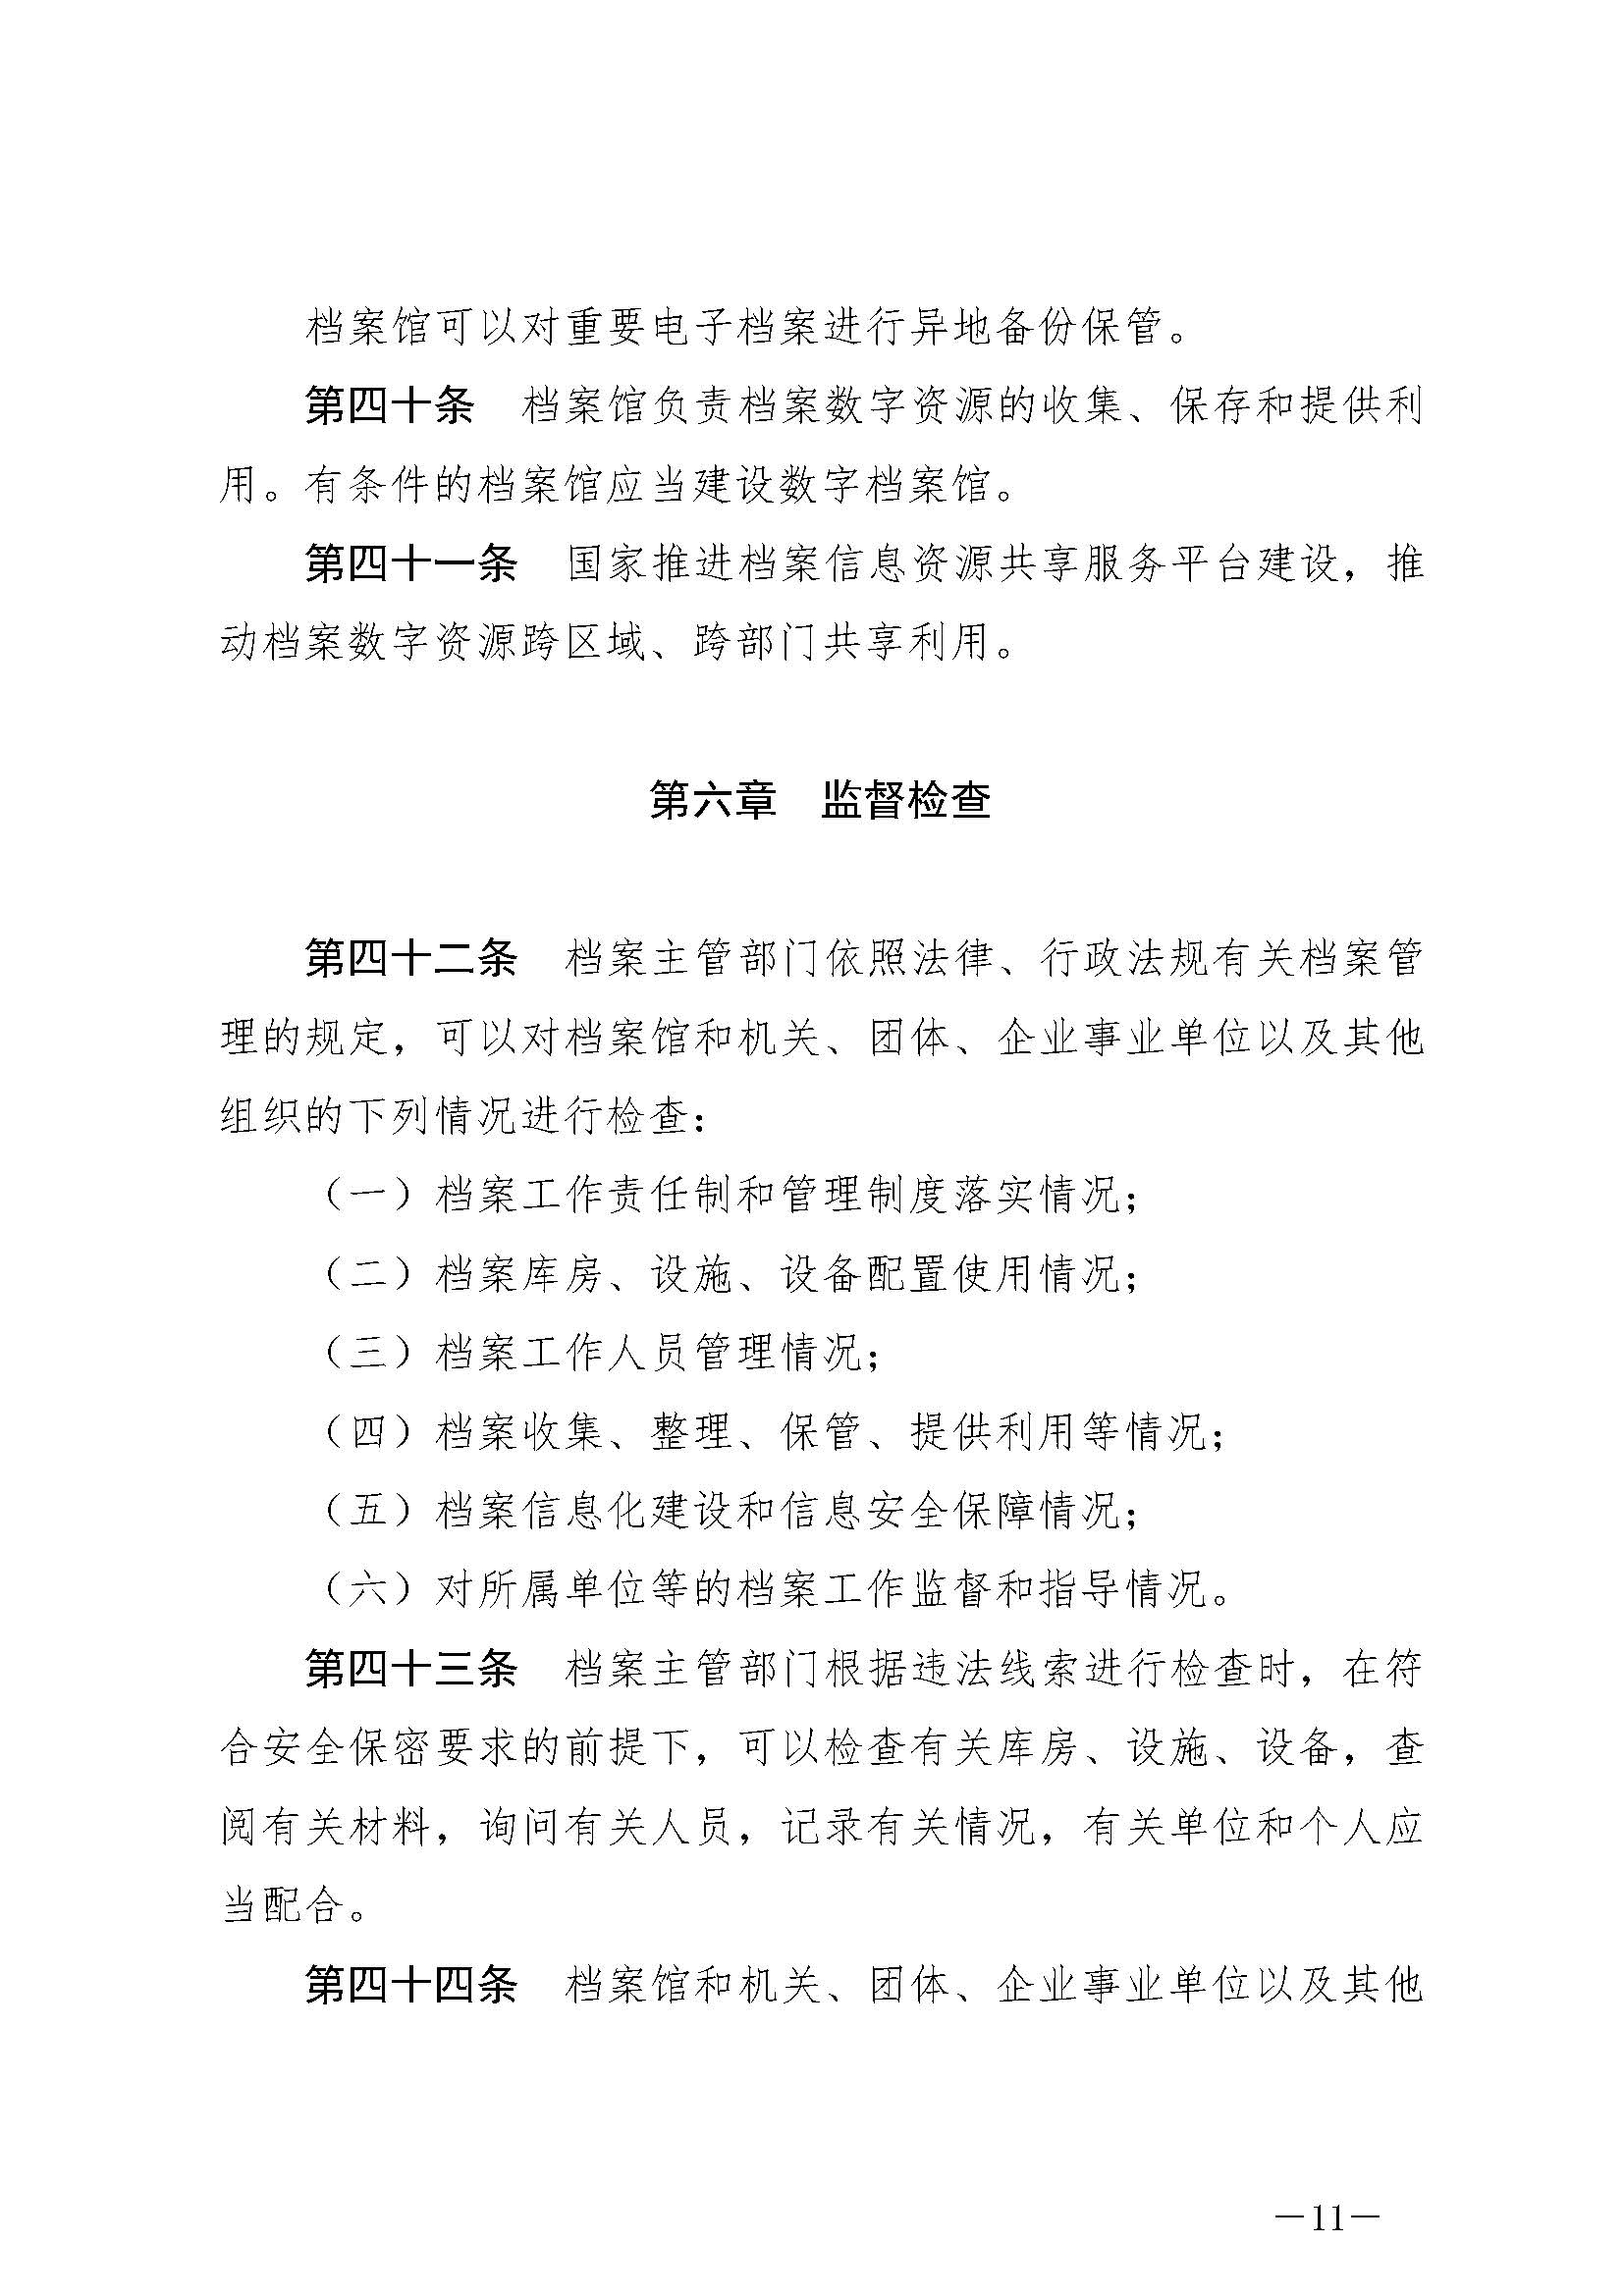 《中华人民共和国档案法》_页面_11.jpg